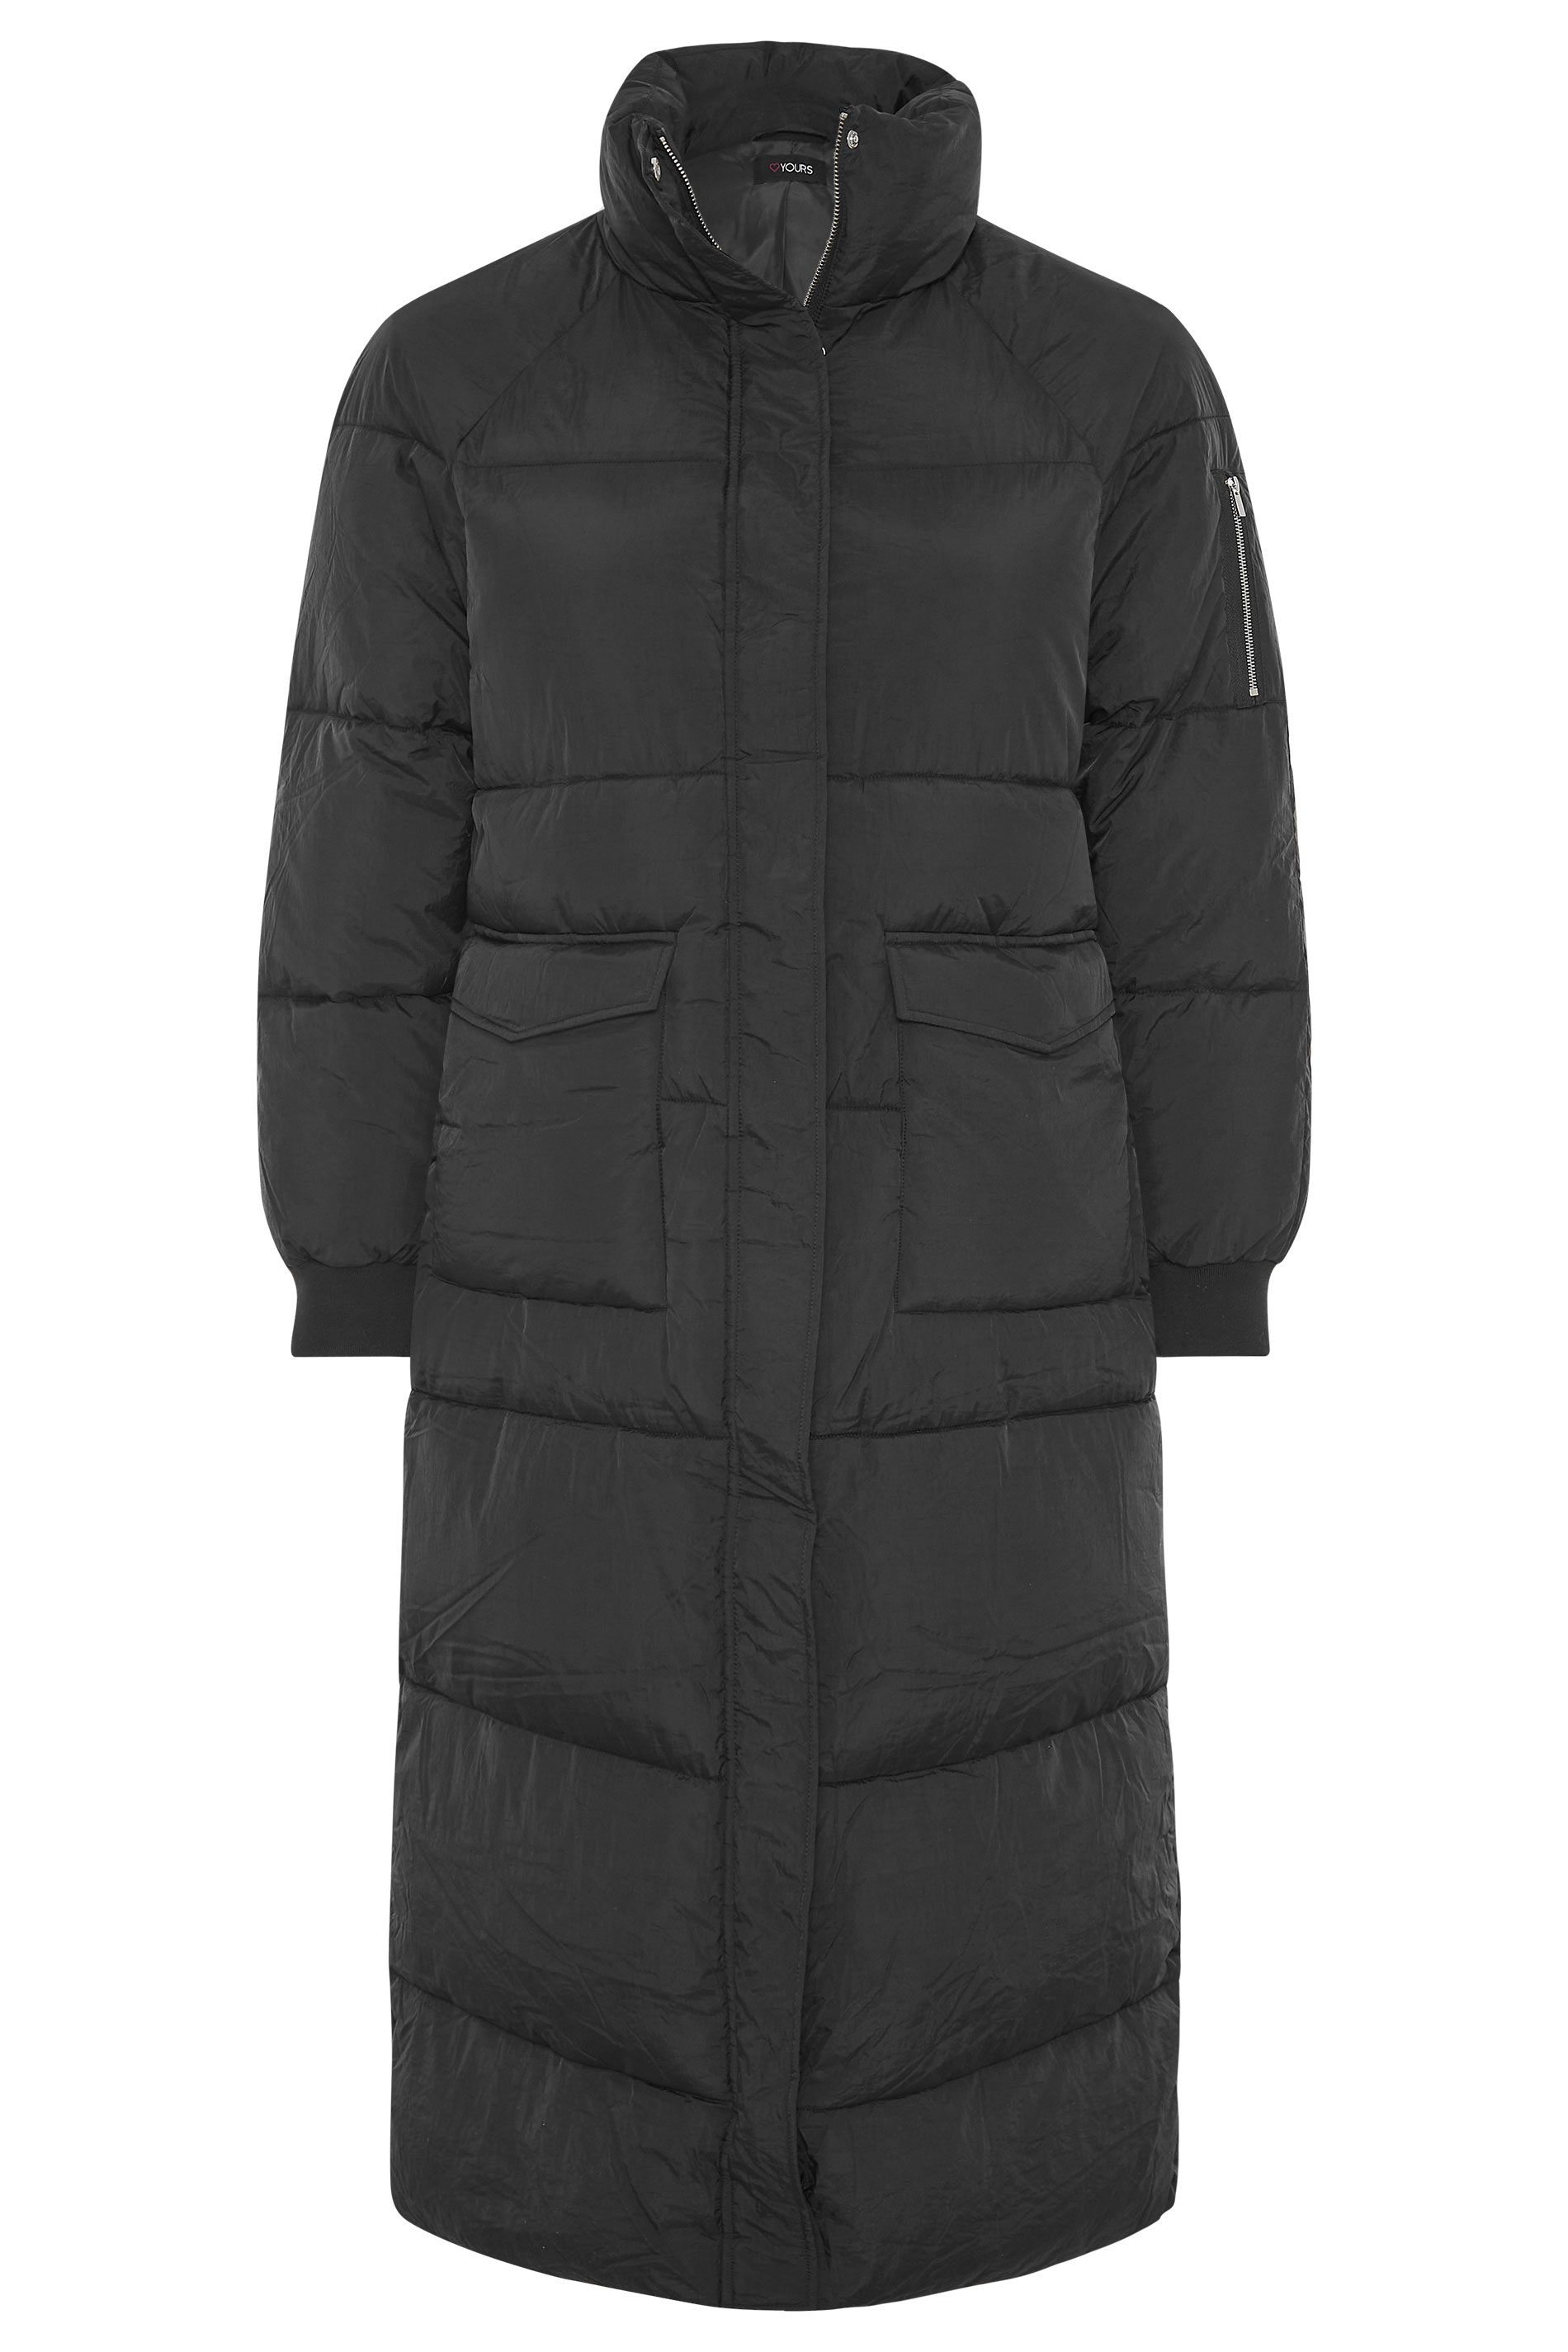 Forkorte Empirisk Optimistisk Plus Size Black Maxi Puffer Coat | Yours Clothing